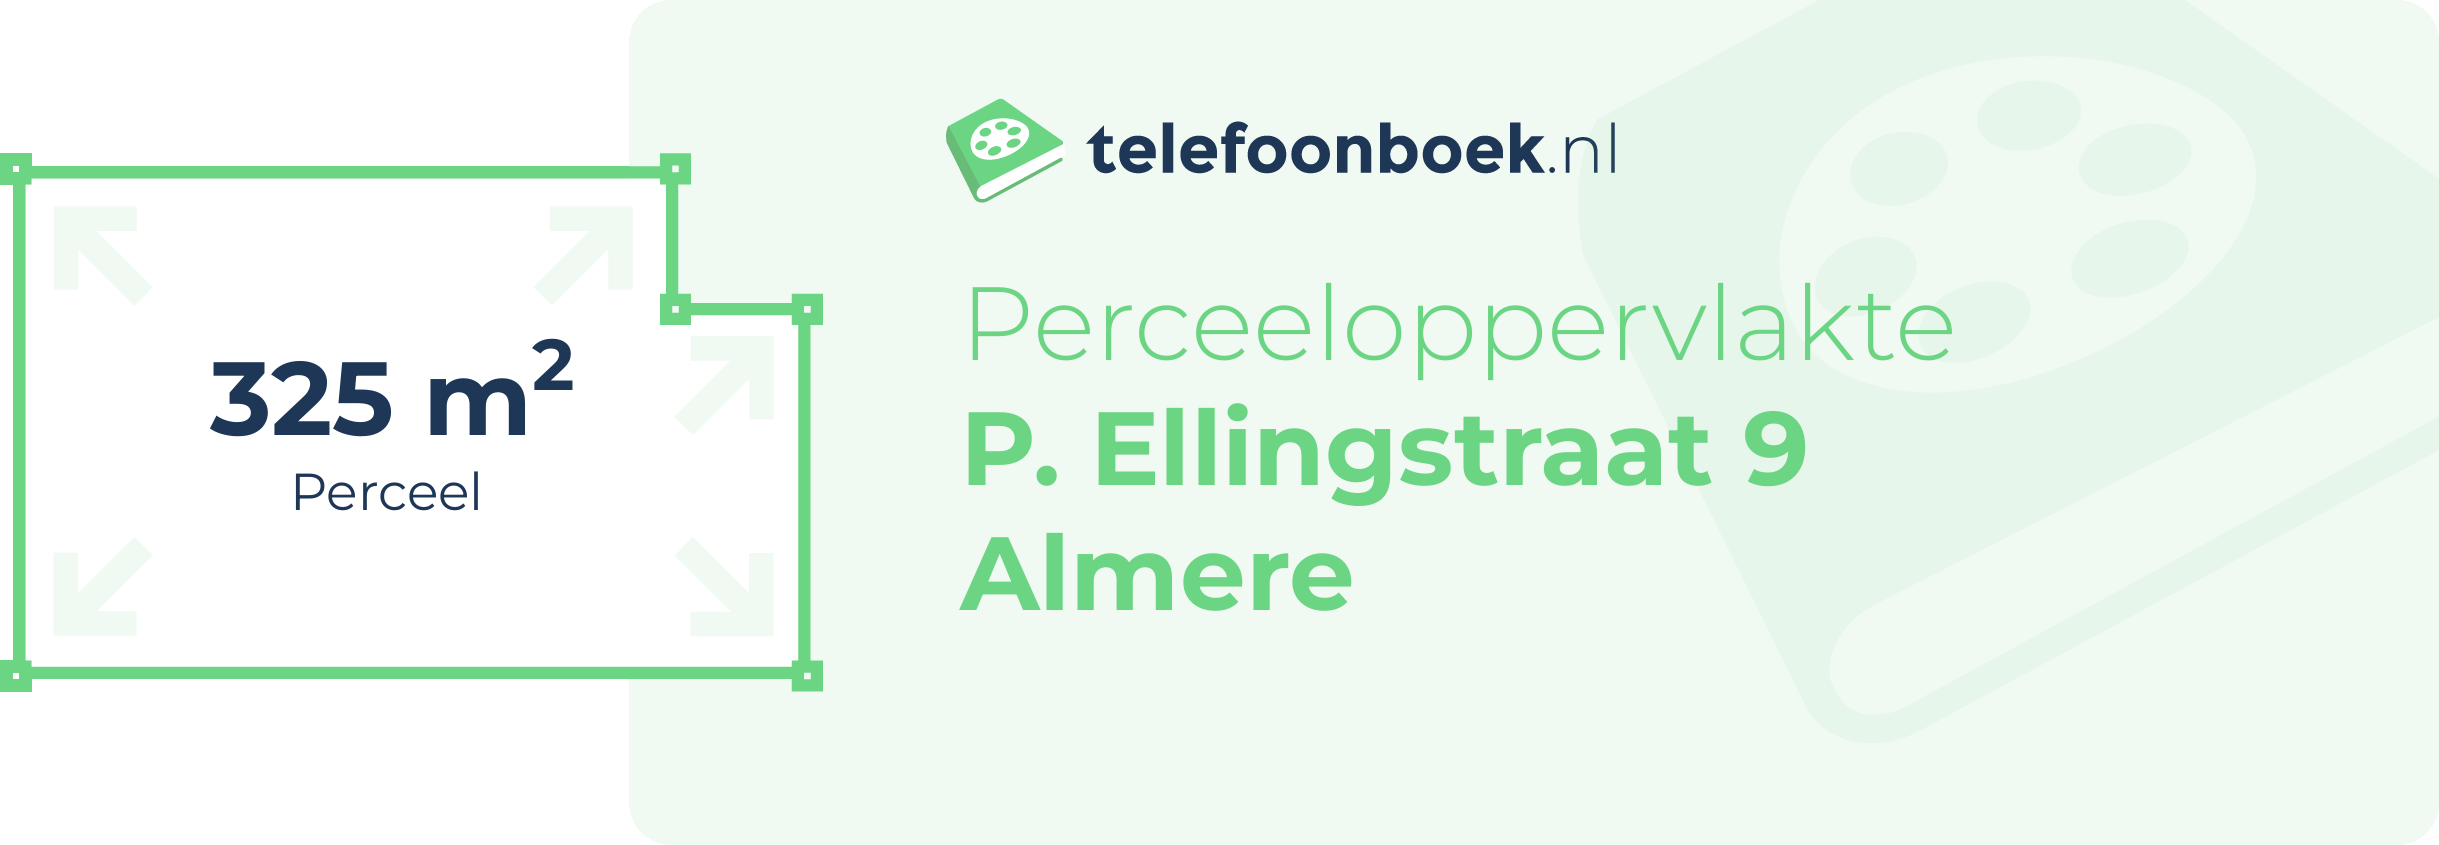 Perceeloppervlakte P. Ellingstraat 9 Almere